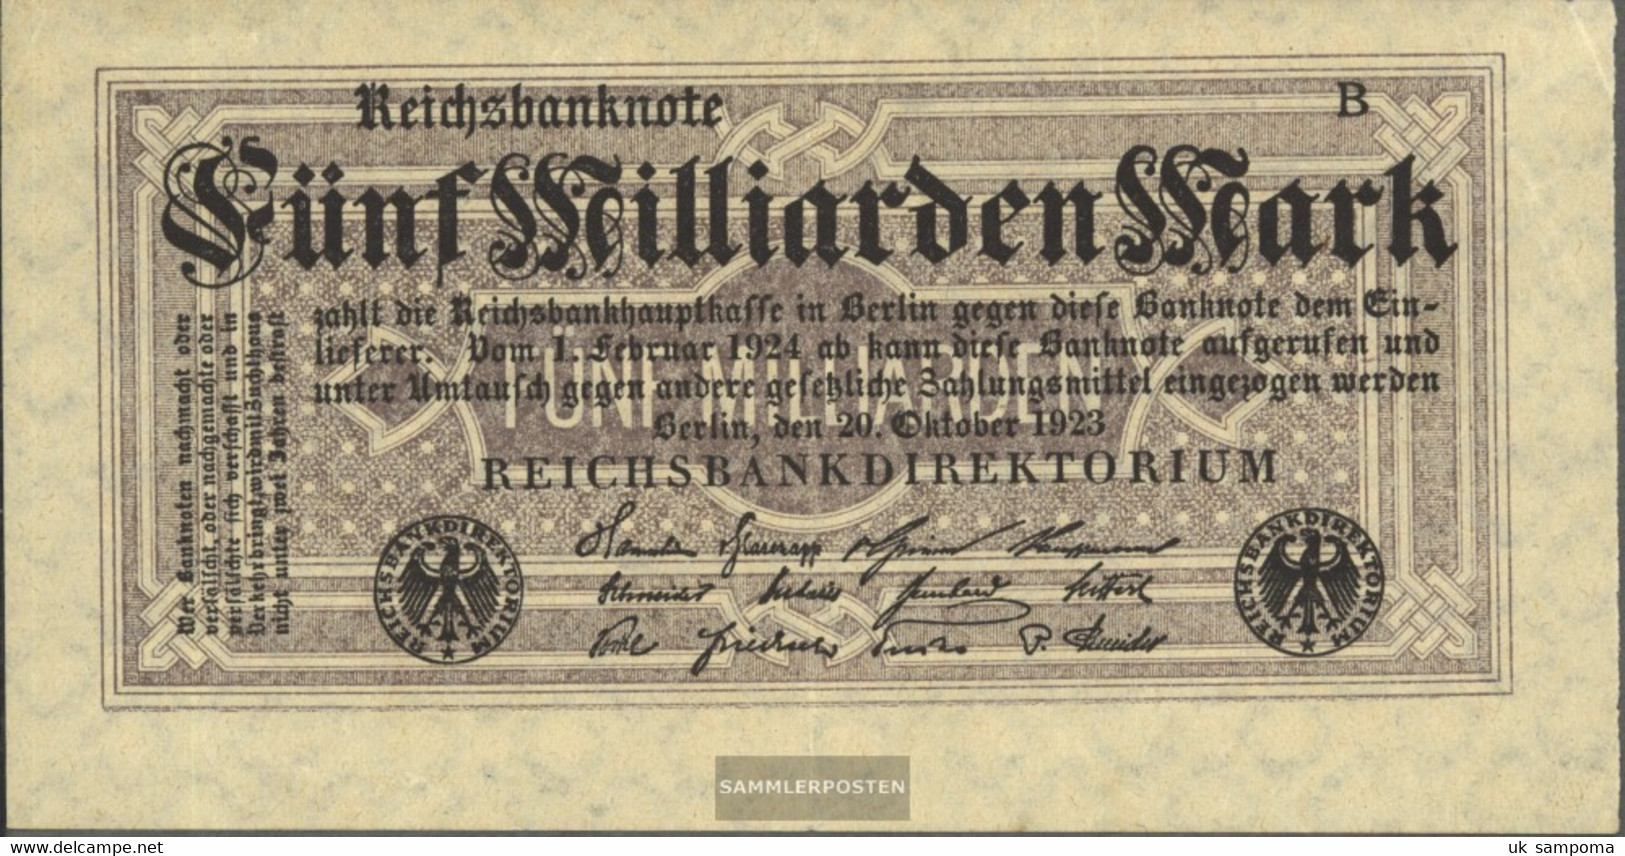 German Empire Rosenbg: 120d, Without Kontrollnummer With Firmenzeichen Used (III) 1923 5 Billion Mark - 5 Miljard Mark